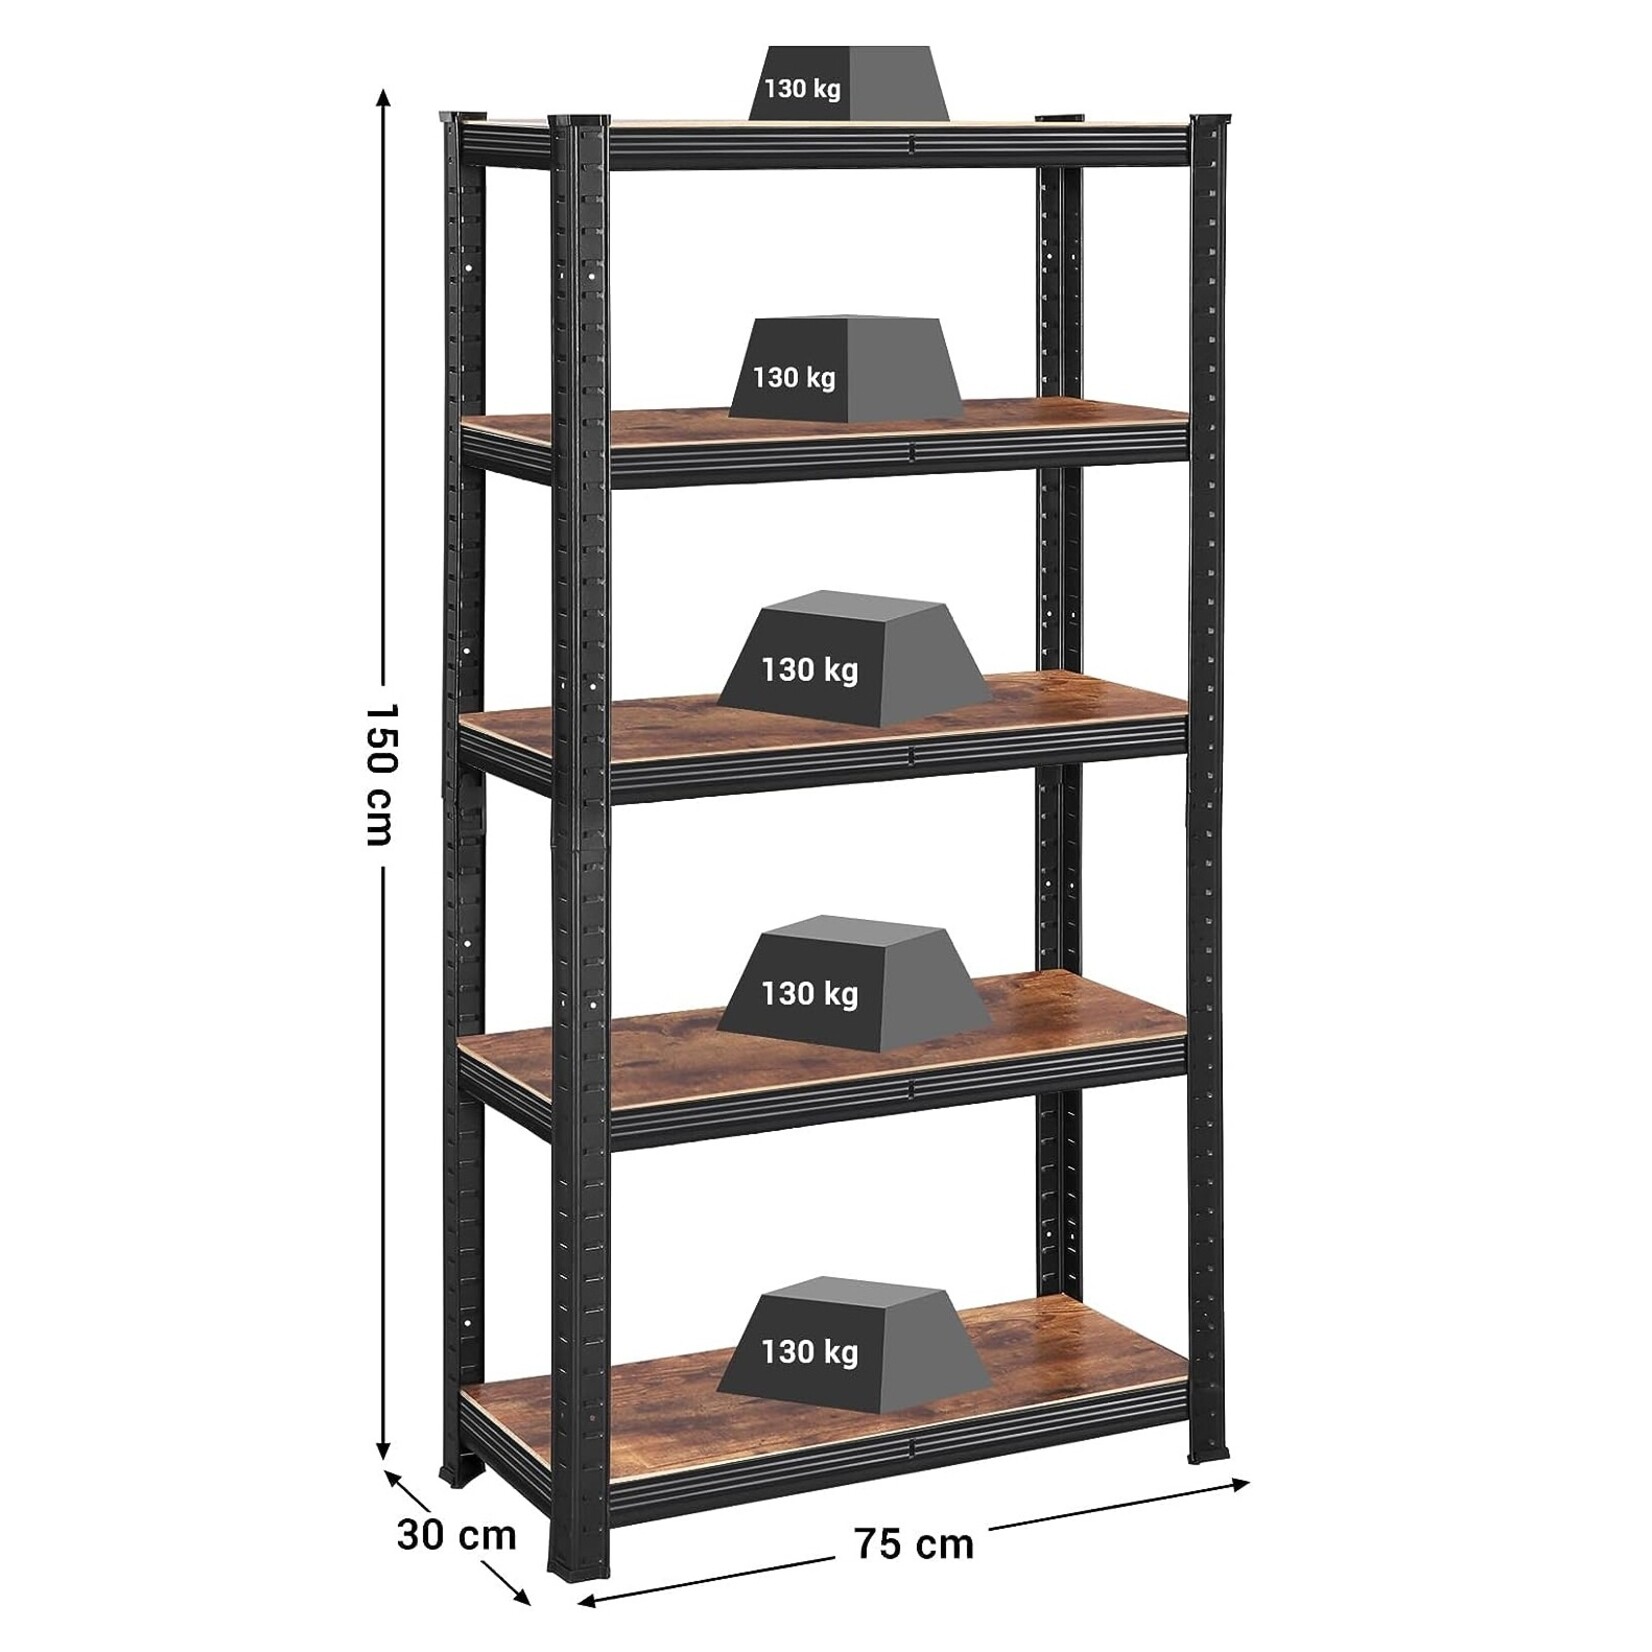 Bobbel Home Bobbel Home - Shelving Cabinet - Industrial Storage Rack - Adjustable Shelves - Black